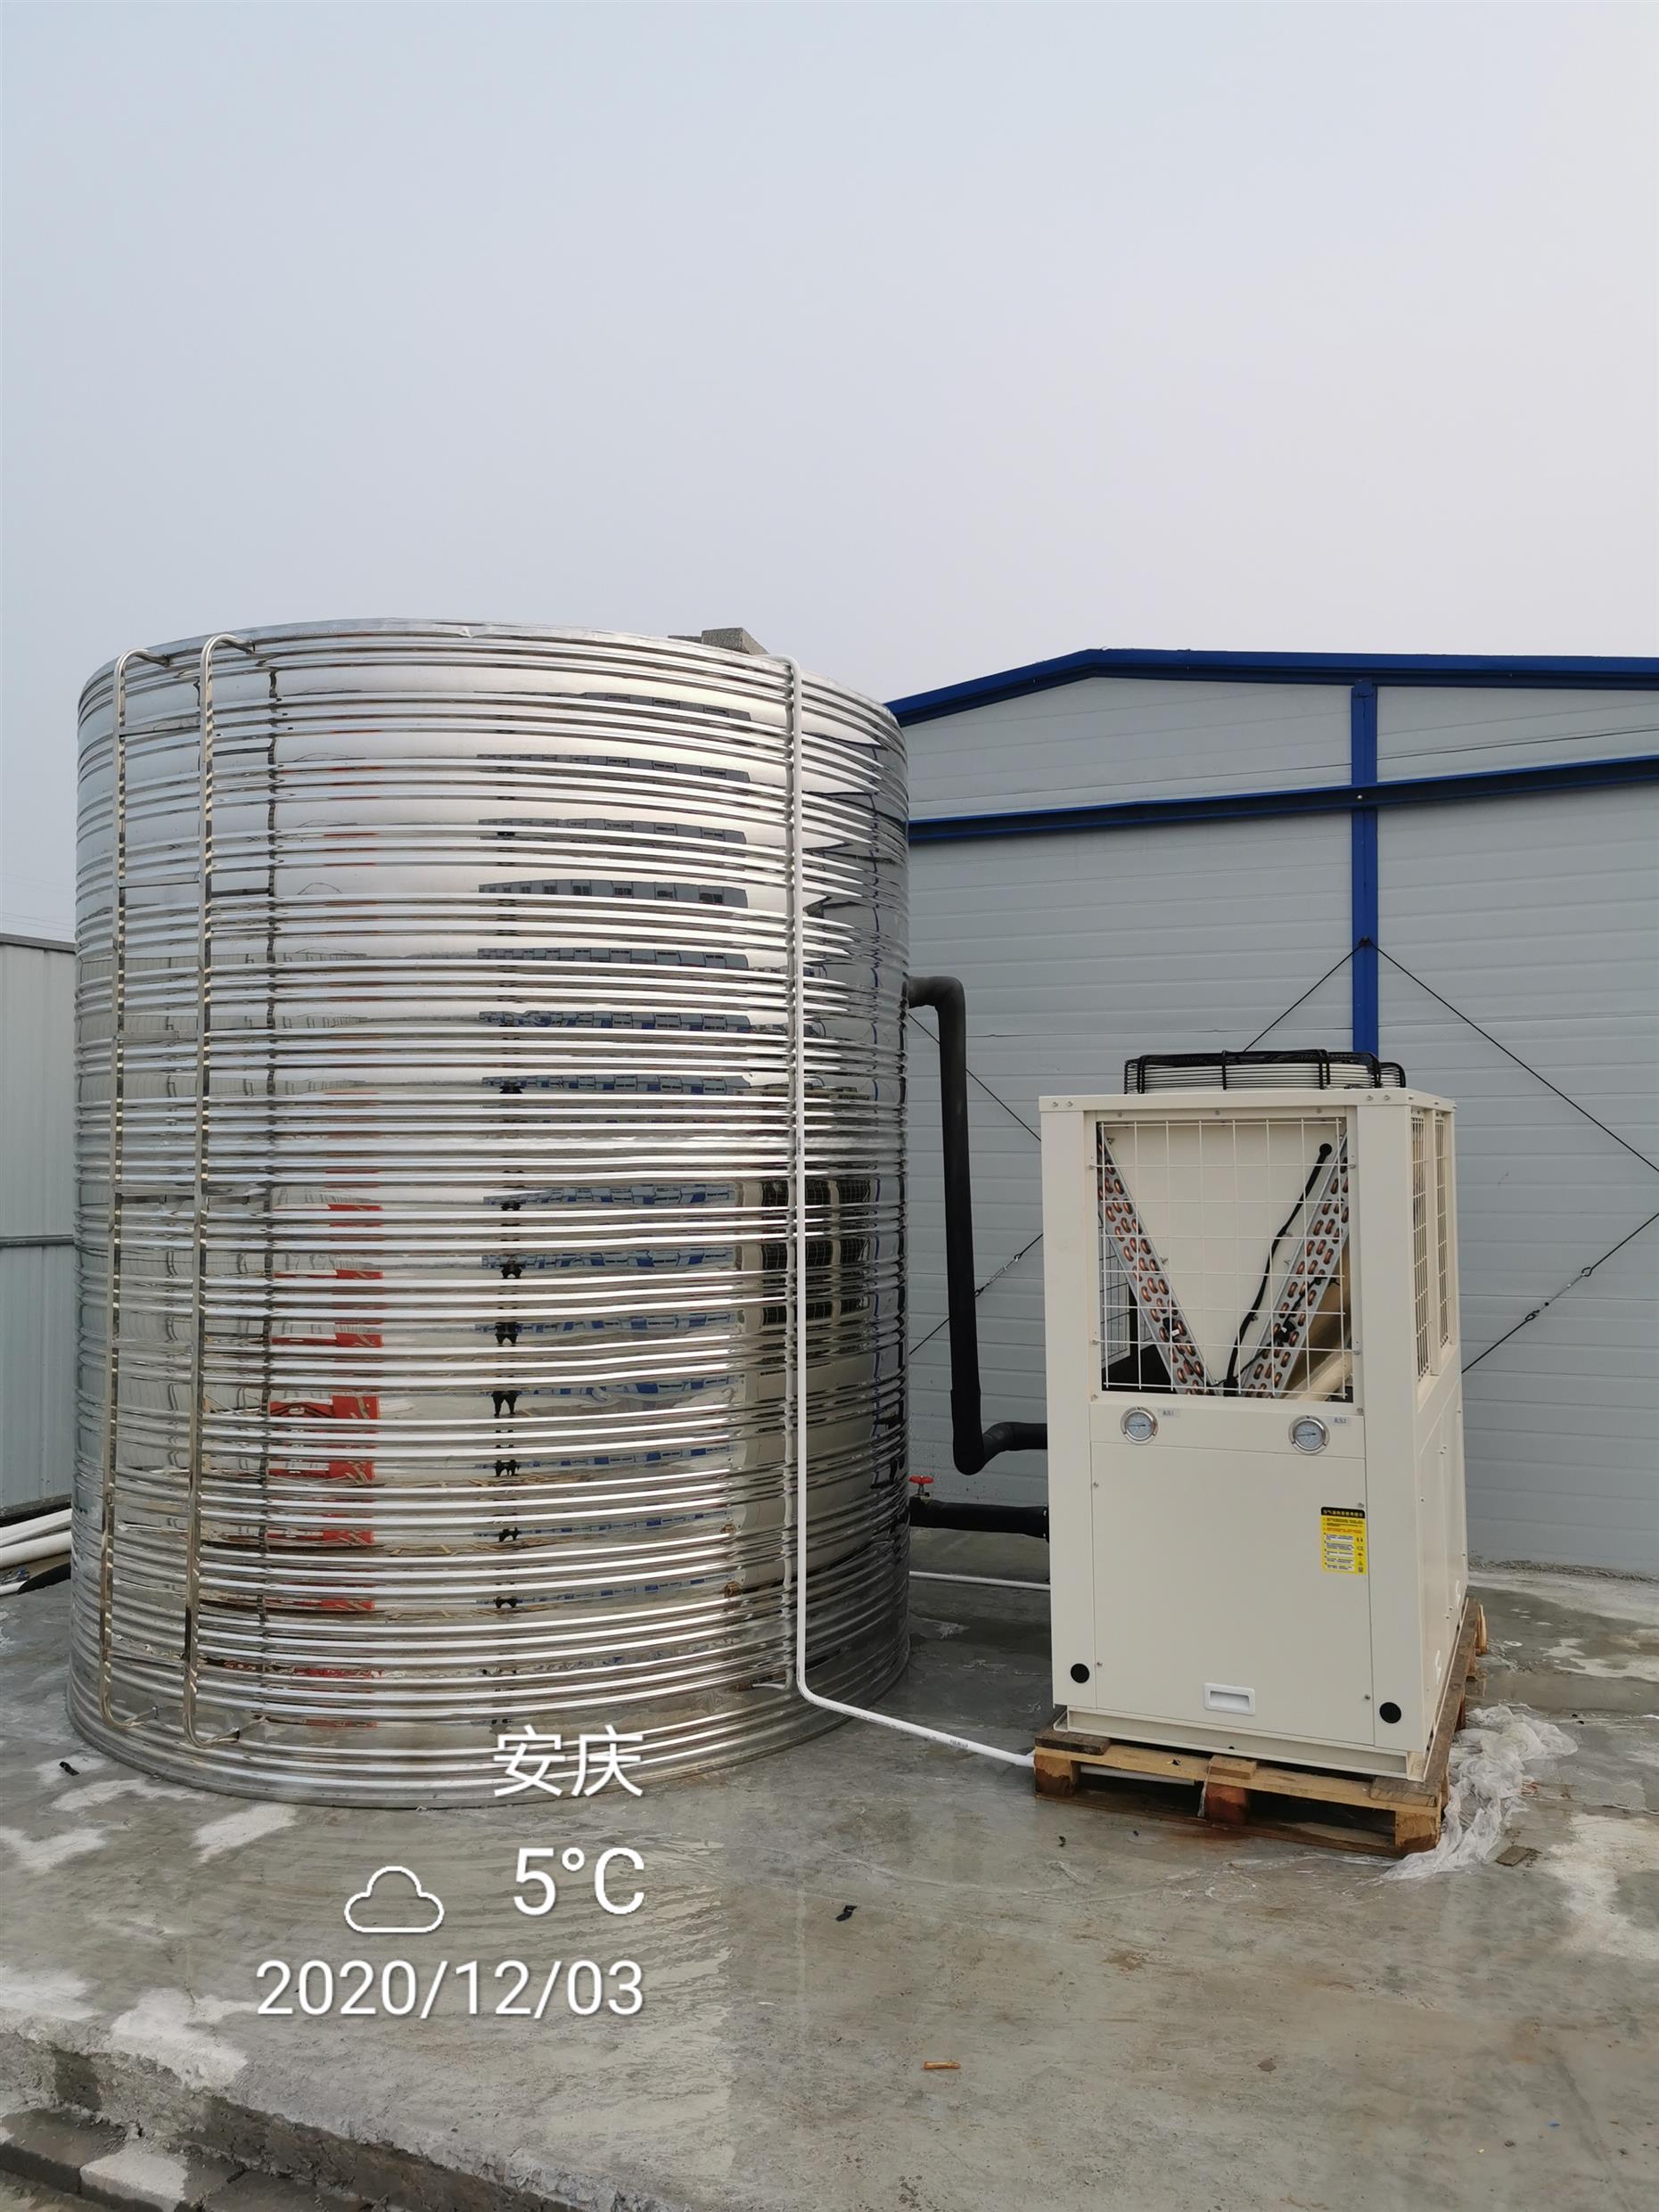 发廊空气源热泵热水器 宿舍空气能热水器一体机厂家